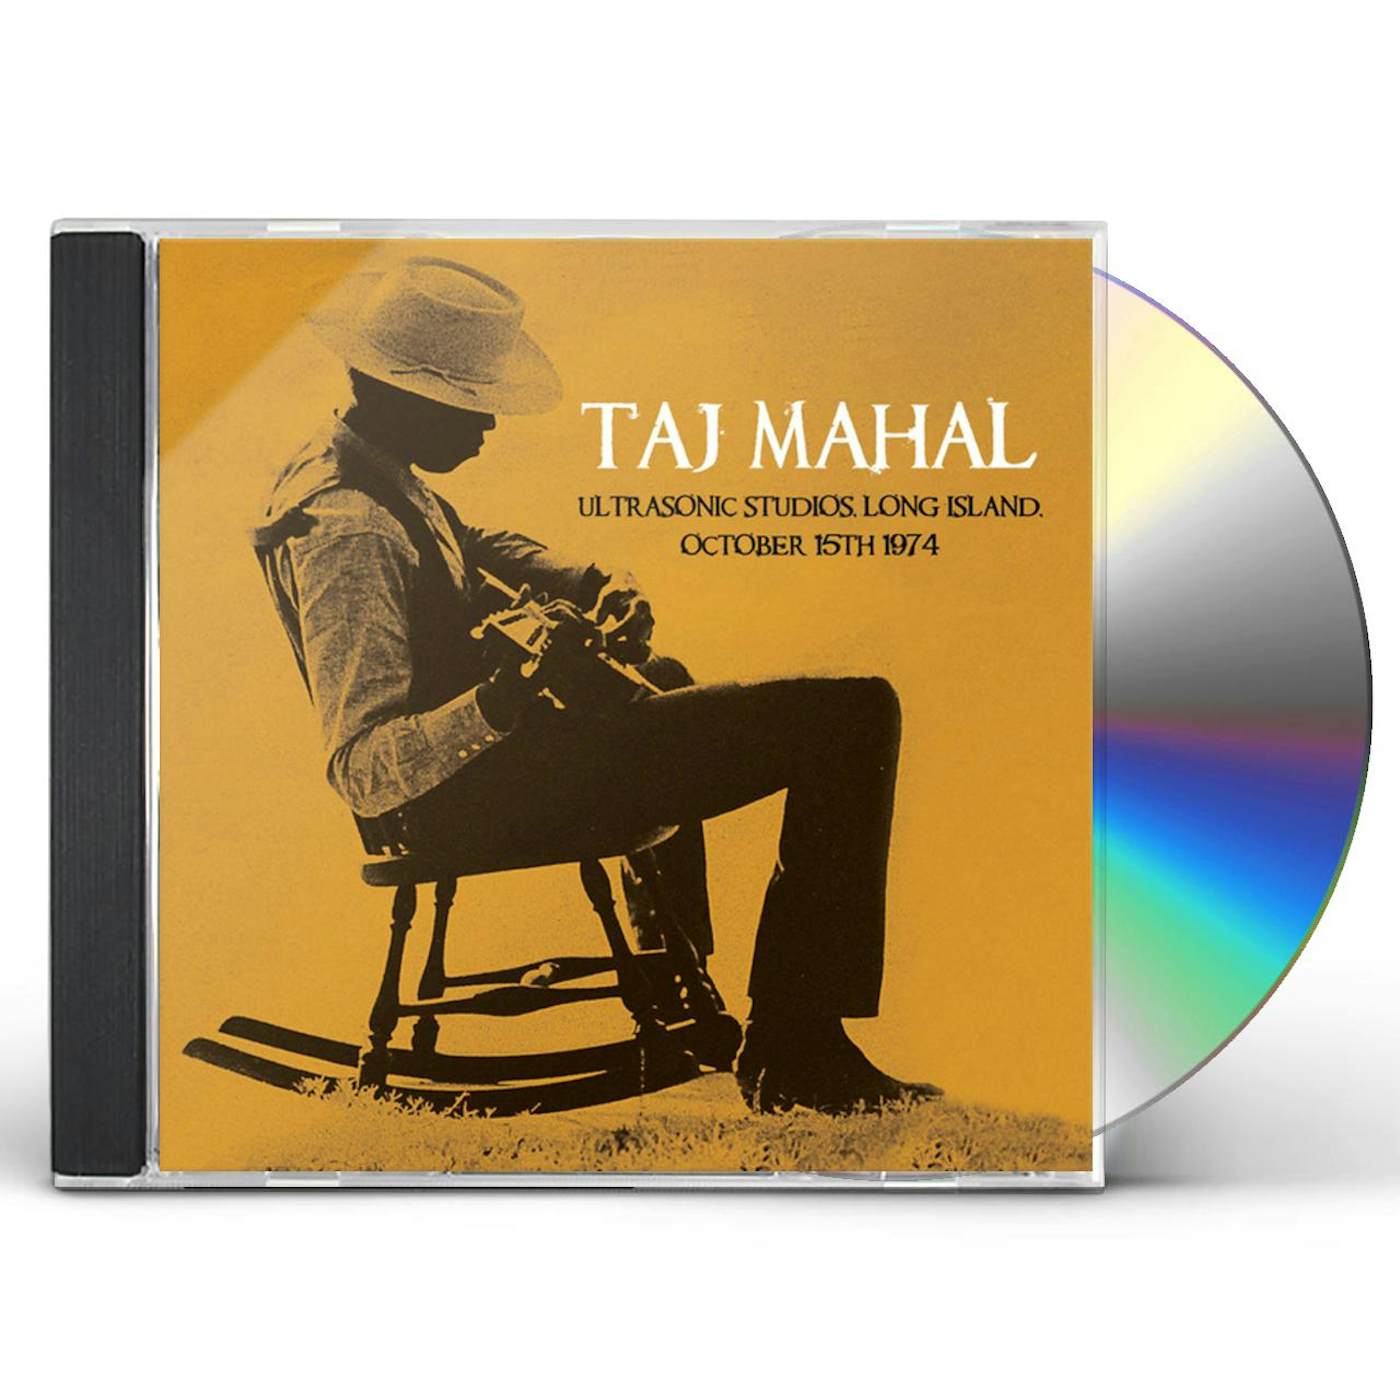 Taj Mahal ULTRASONIC STUDIOS LONG ISLAND OCTOBER 15TH 1974 CD